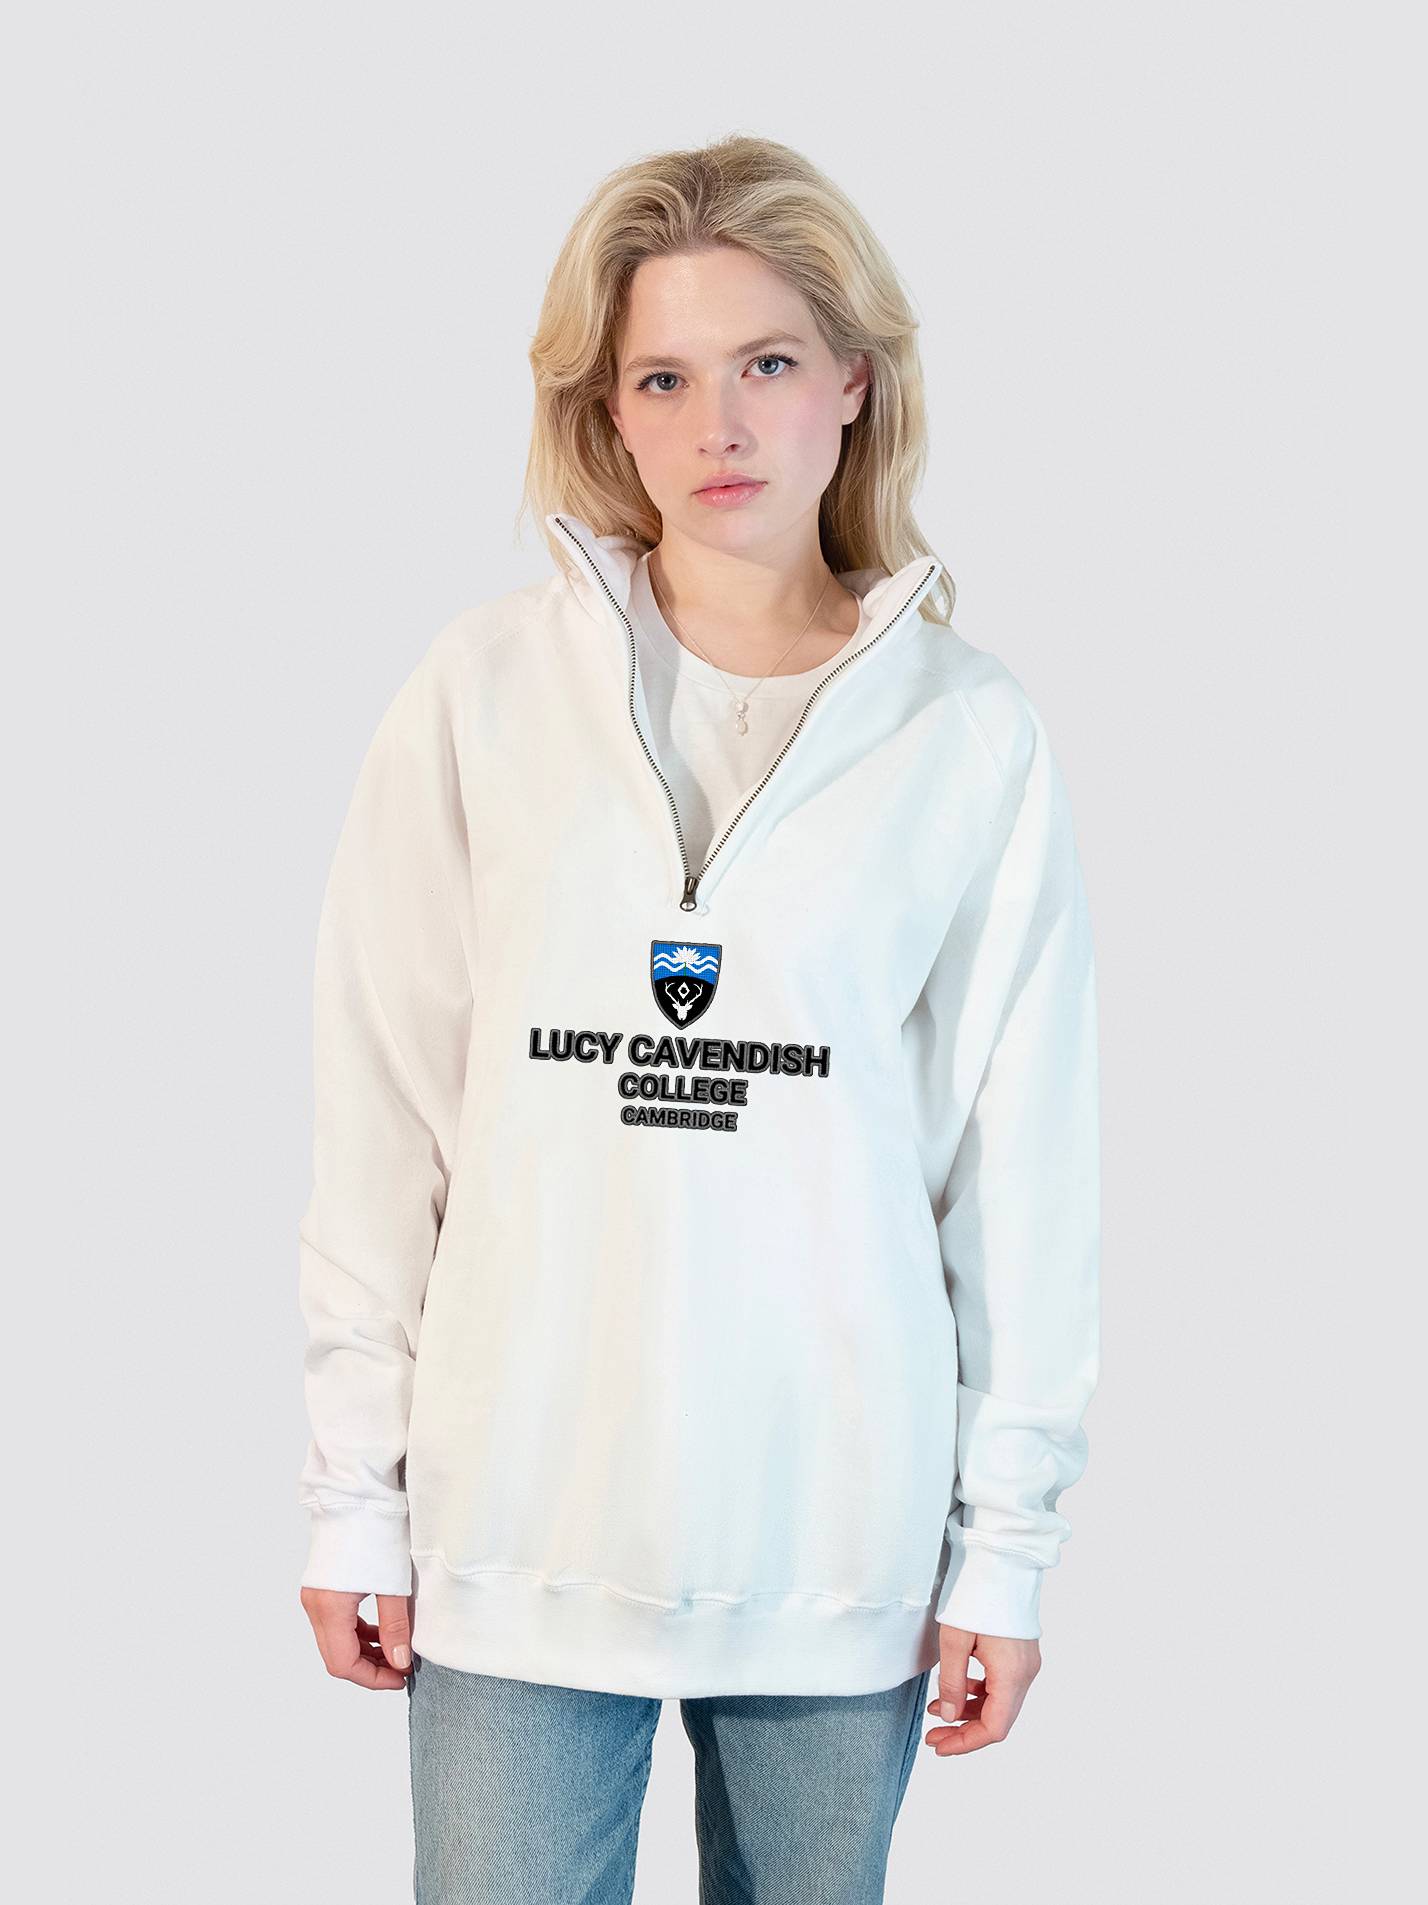 Lucy Cavendish College Cambridge MCR Heritage Unisex 1/4 Zip Sweatshirt